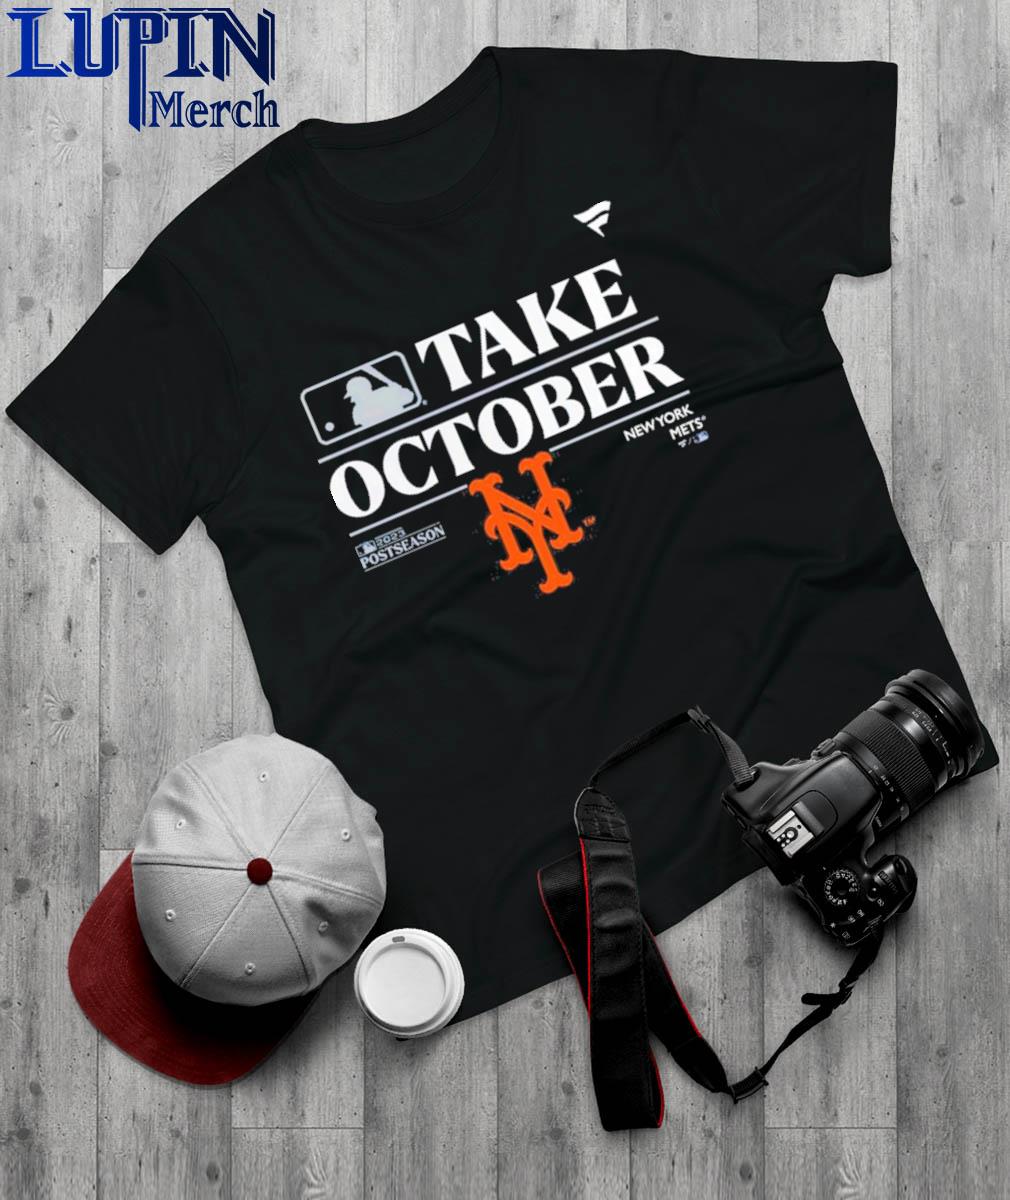 New York Mets Postseason 2022 Champions shirt,Sweater, Hoodie, And